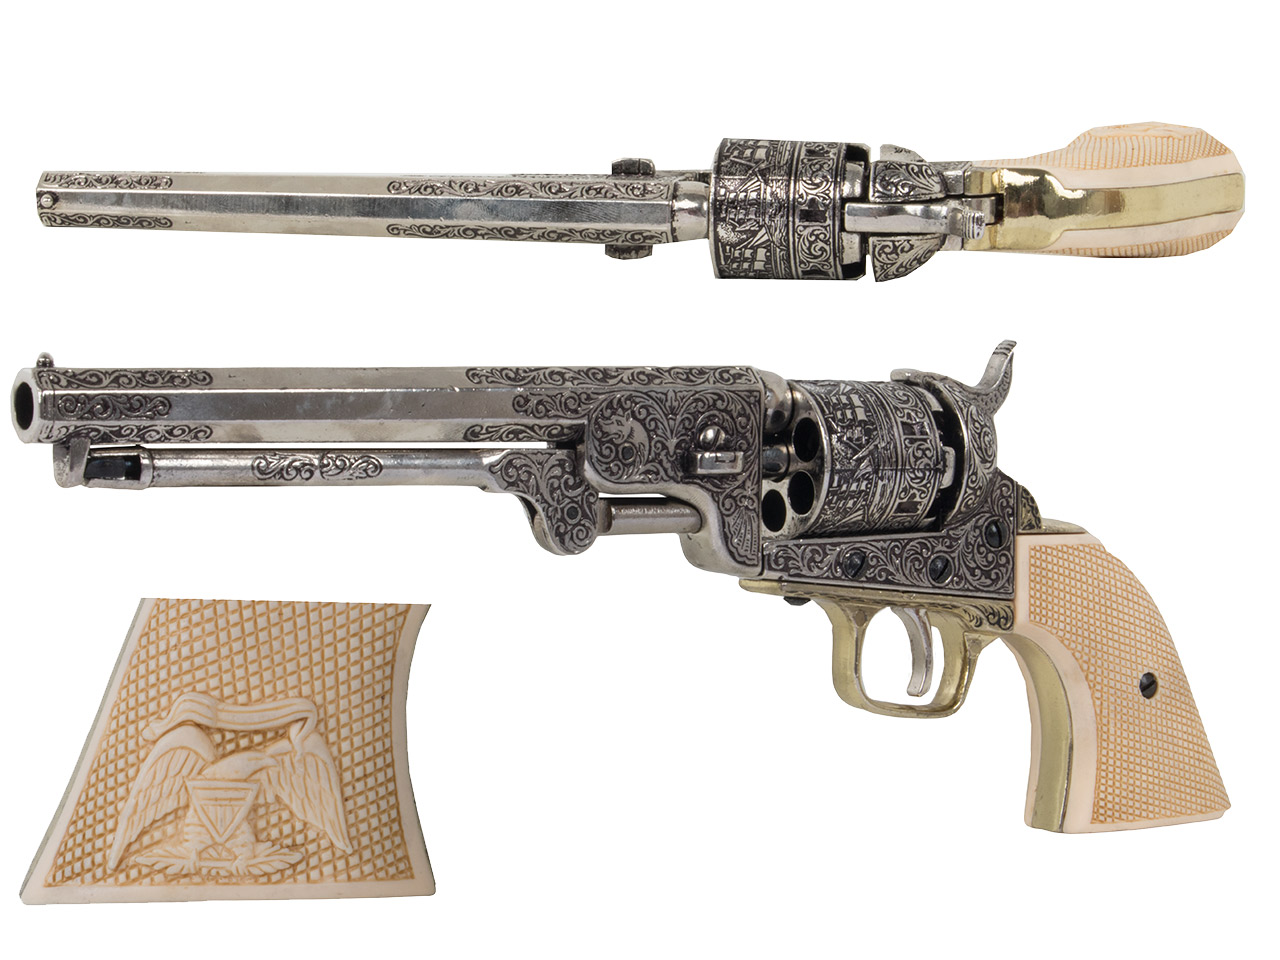 Deko Vorderlader Revolver Amerikanischer Bürgerkrieg Marine Revolver USA 1851 Länge 35 cm altgrau weiße Griffe